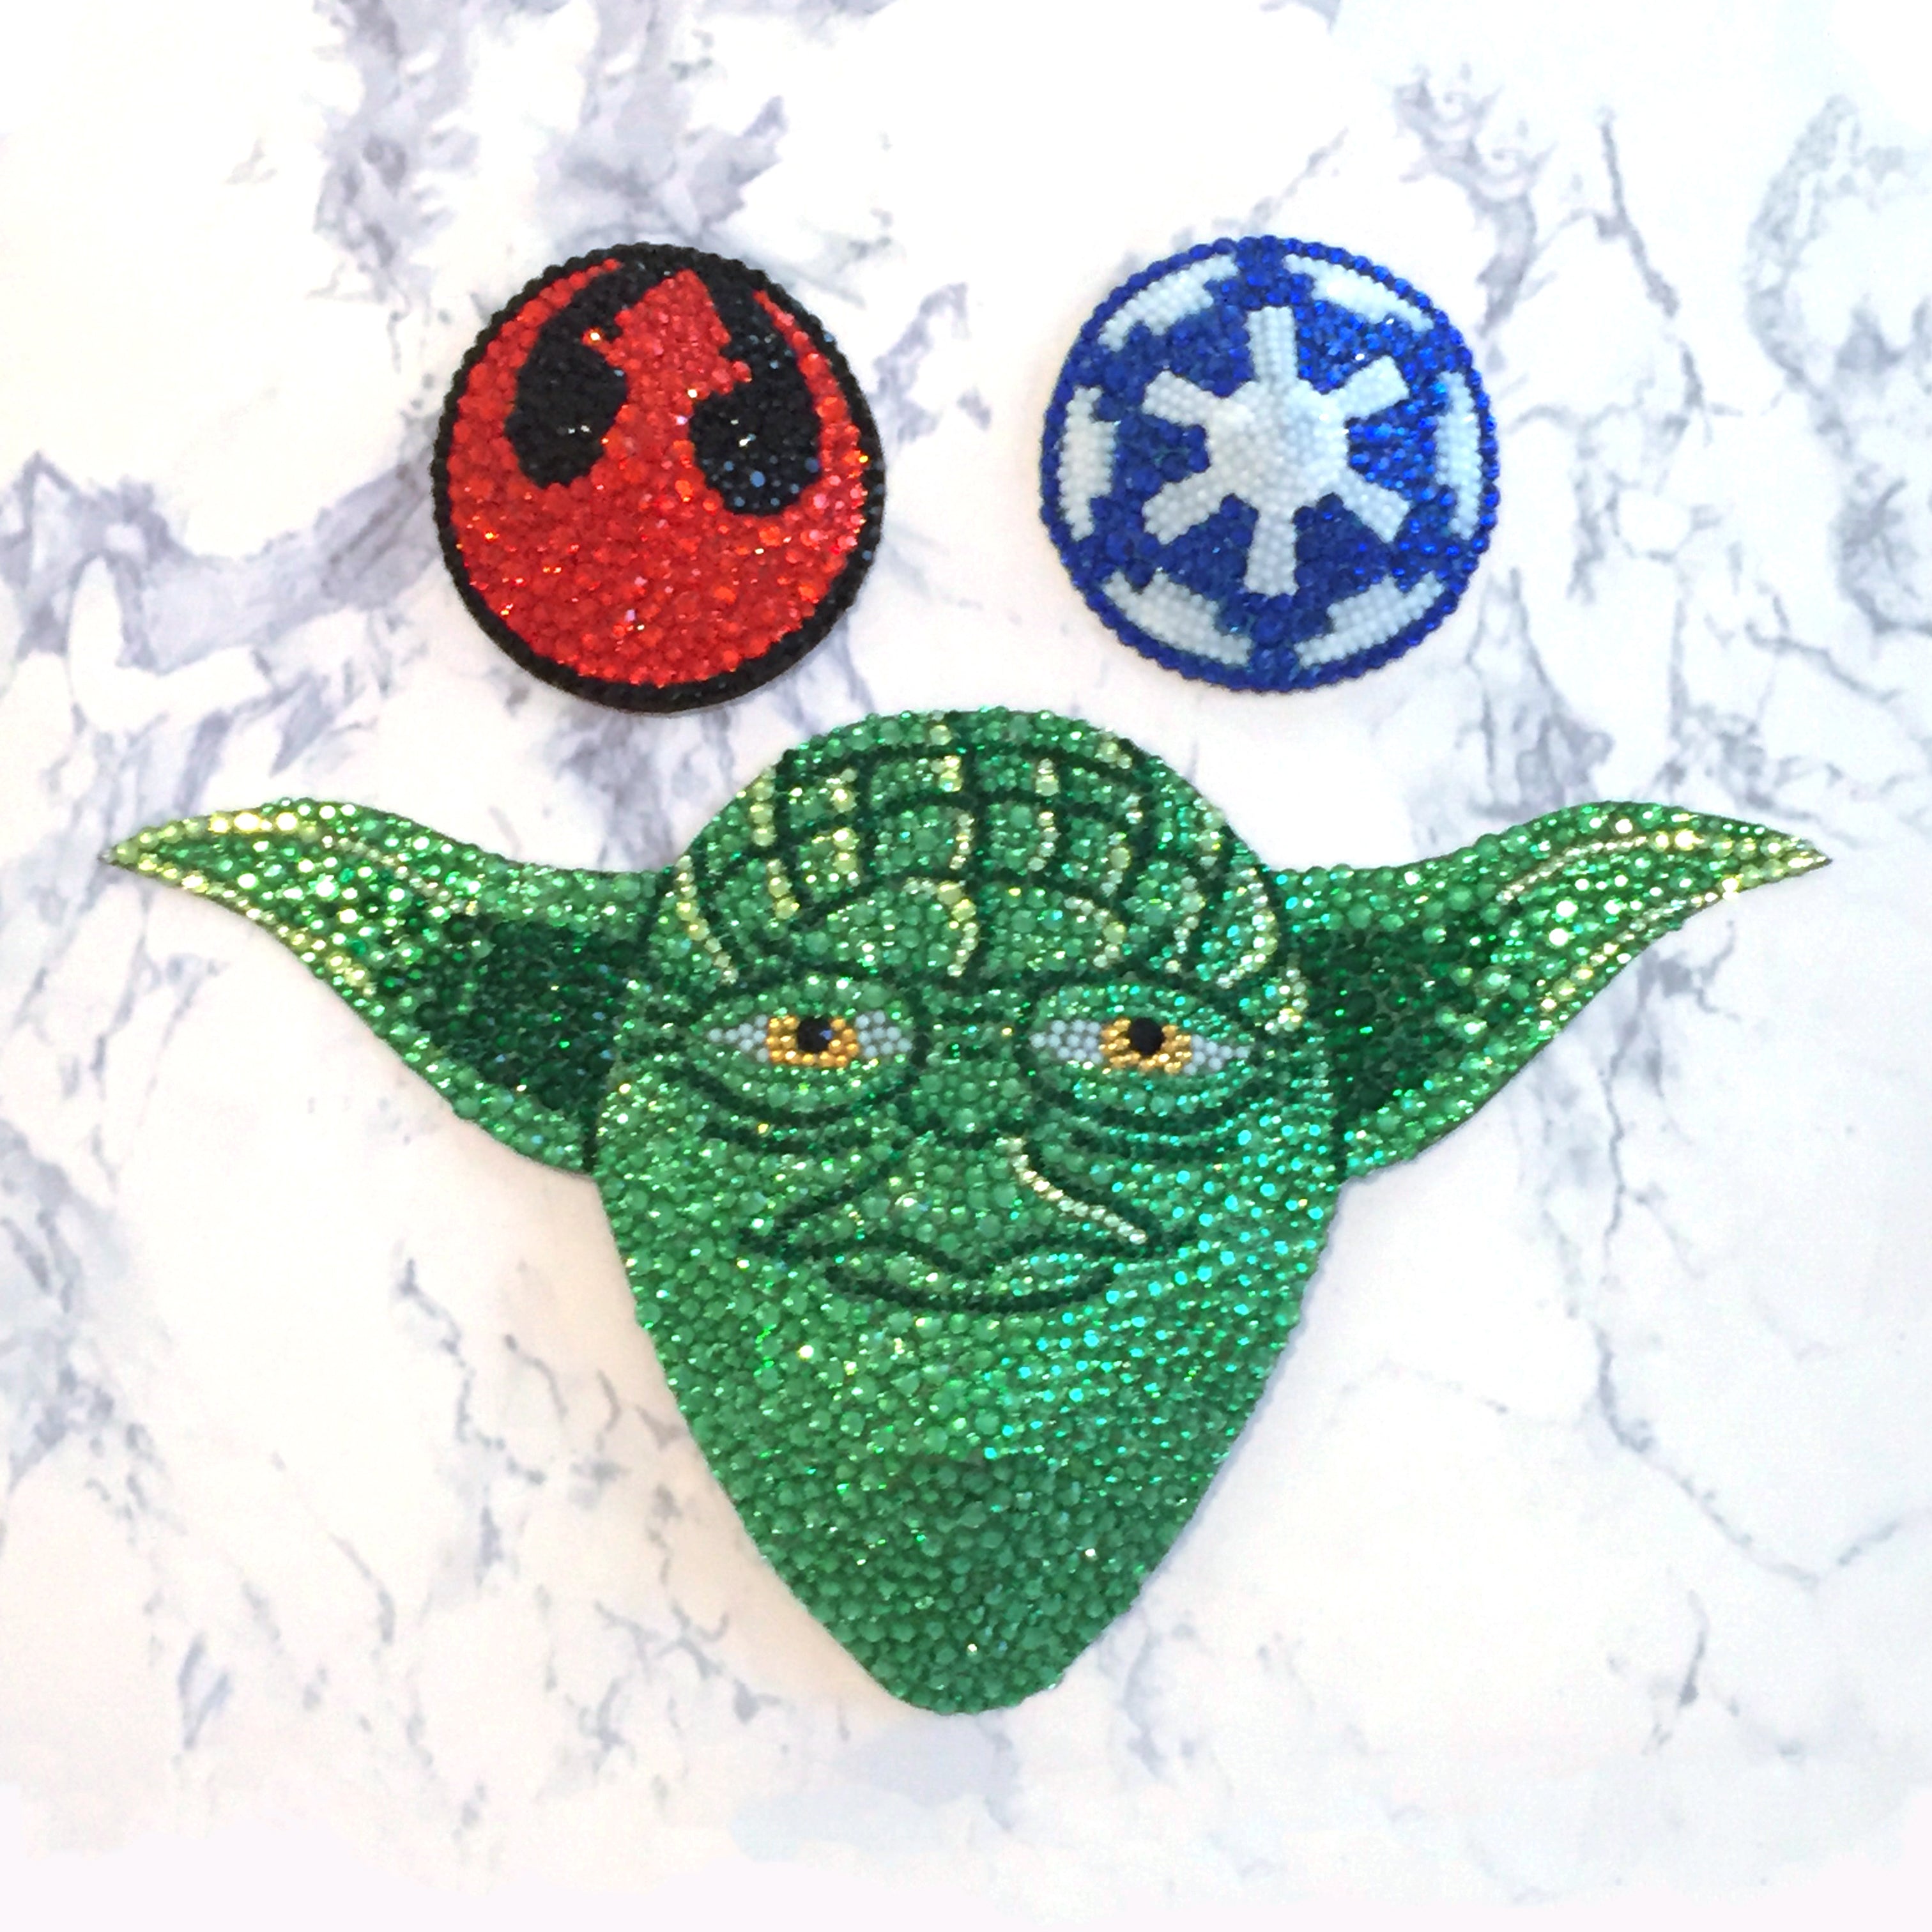 Star Wars Galaxy Round Patch, Rebel Alliance Logo, Embroidered